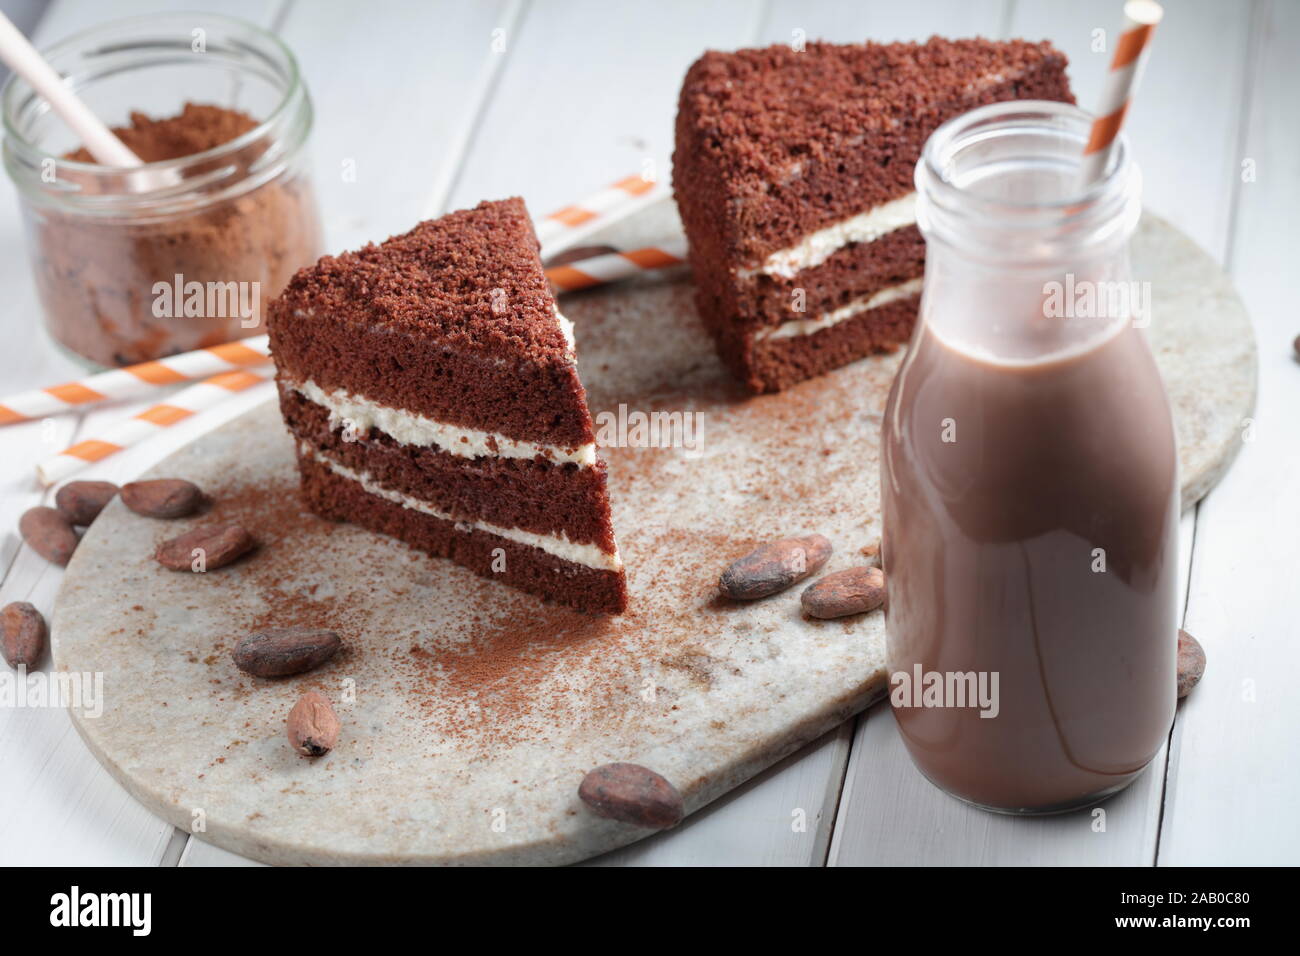 Zwei Scheiben Schokolade Kuchen, heiße Schokolade in einer Flasche, Milchpulver, Kakao und kakaohaltige Bohnen auf einem rustikalen Tisch Stockfoto